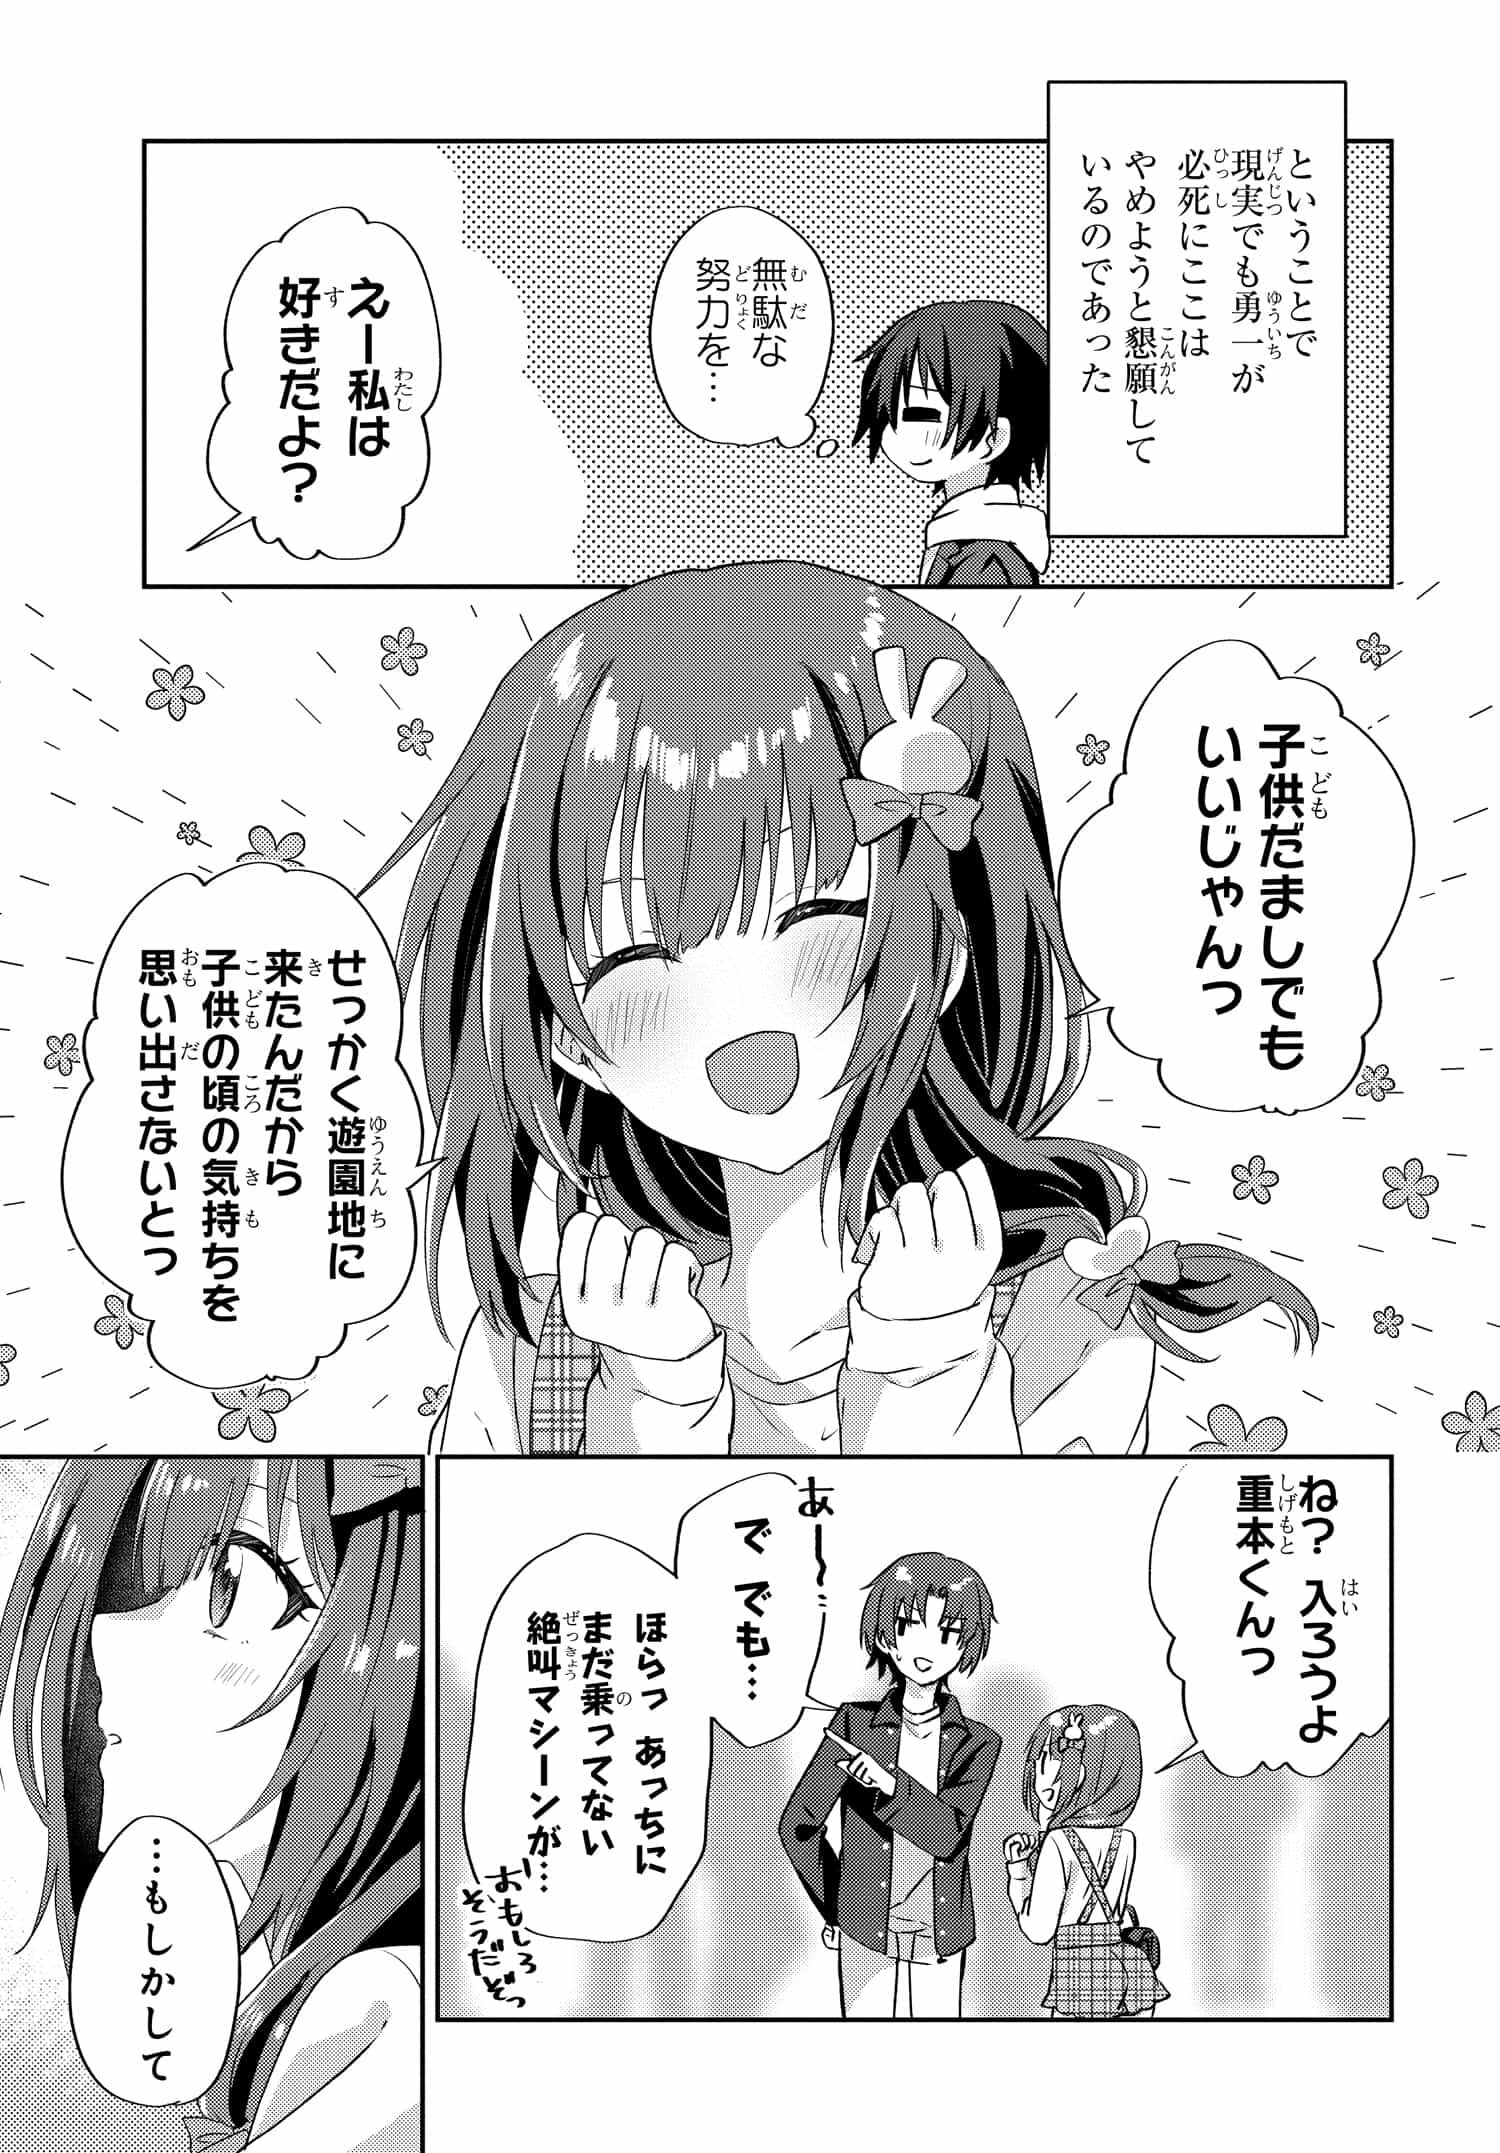 Romcom Manga ni Haitte Shimatta no de, Oshi no Make Heroine wo Zenryoku de Shiawase ni suru - Chapter 7.2 - Page 2